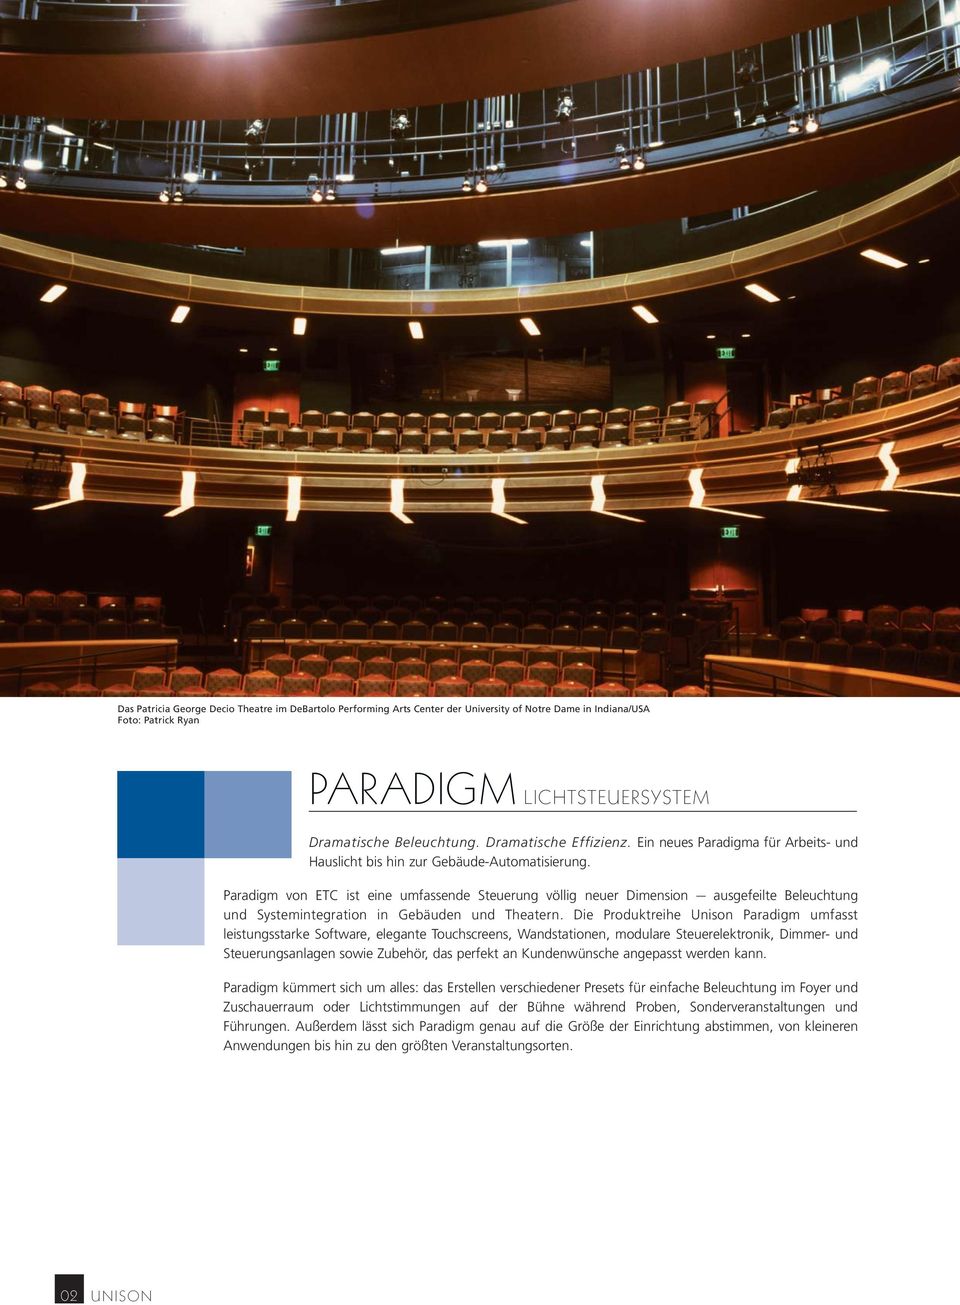 Paradigm von ETC ist eine umfassende Steuerung völlig neuer Dimension ausgefeilte Beleuchtung und Systemintegration in Gebäuden und Theatern.